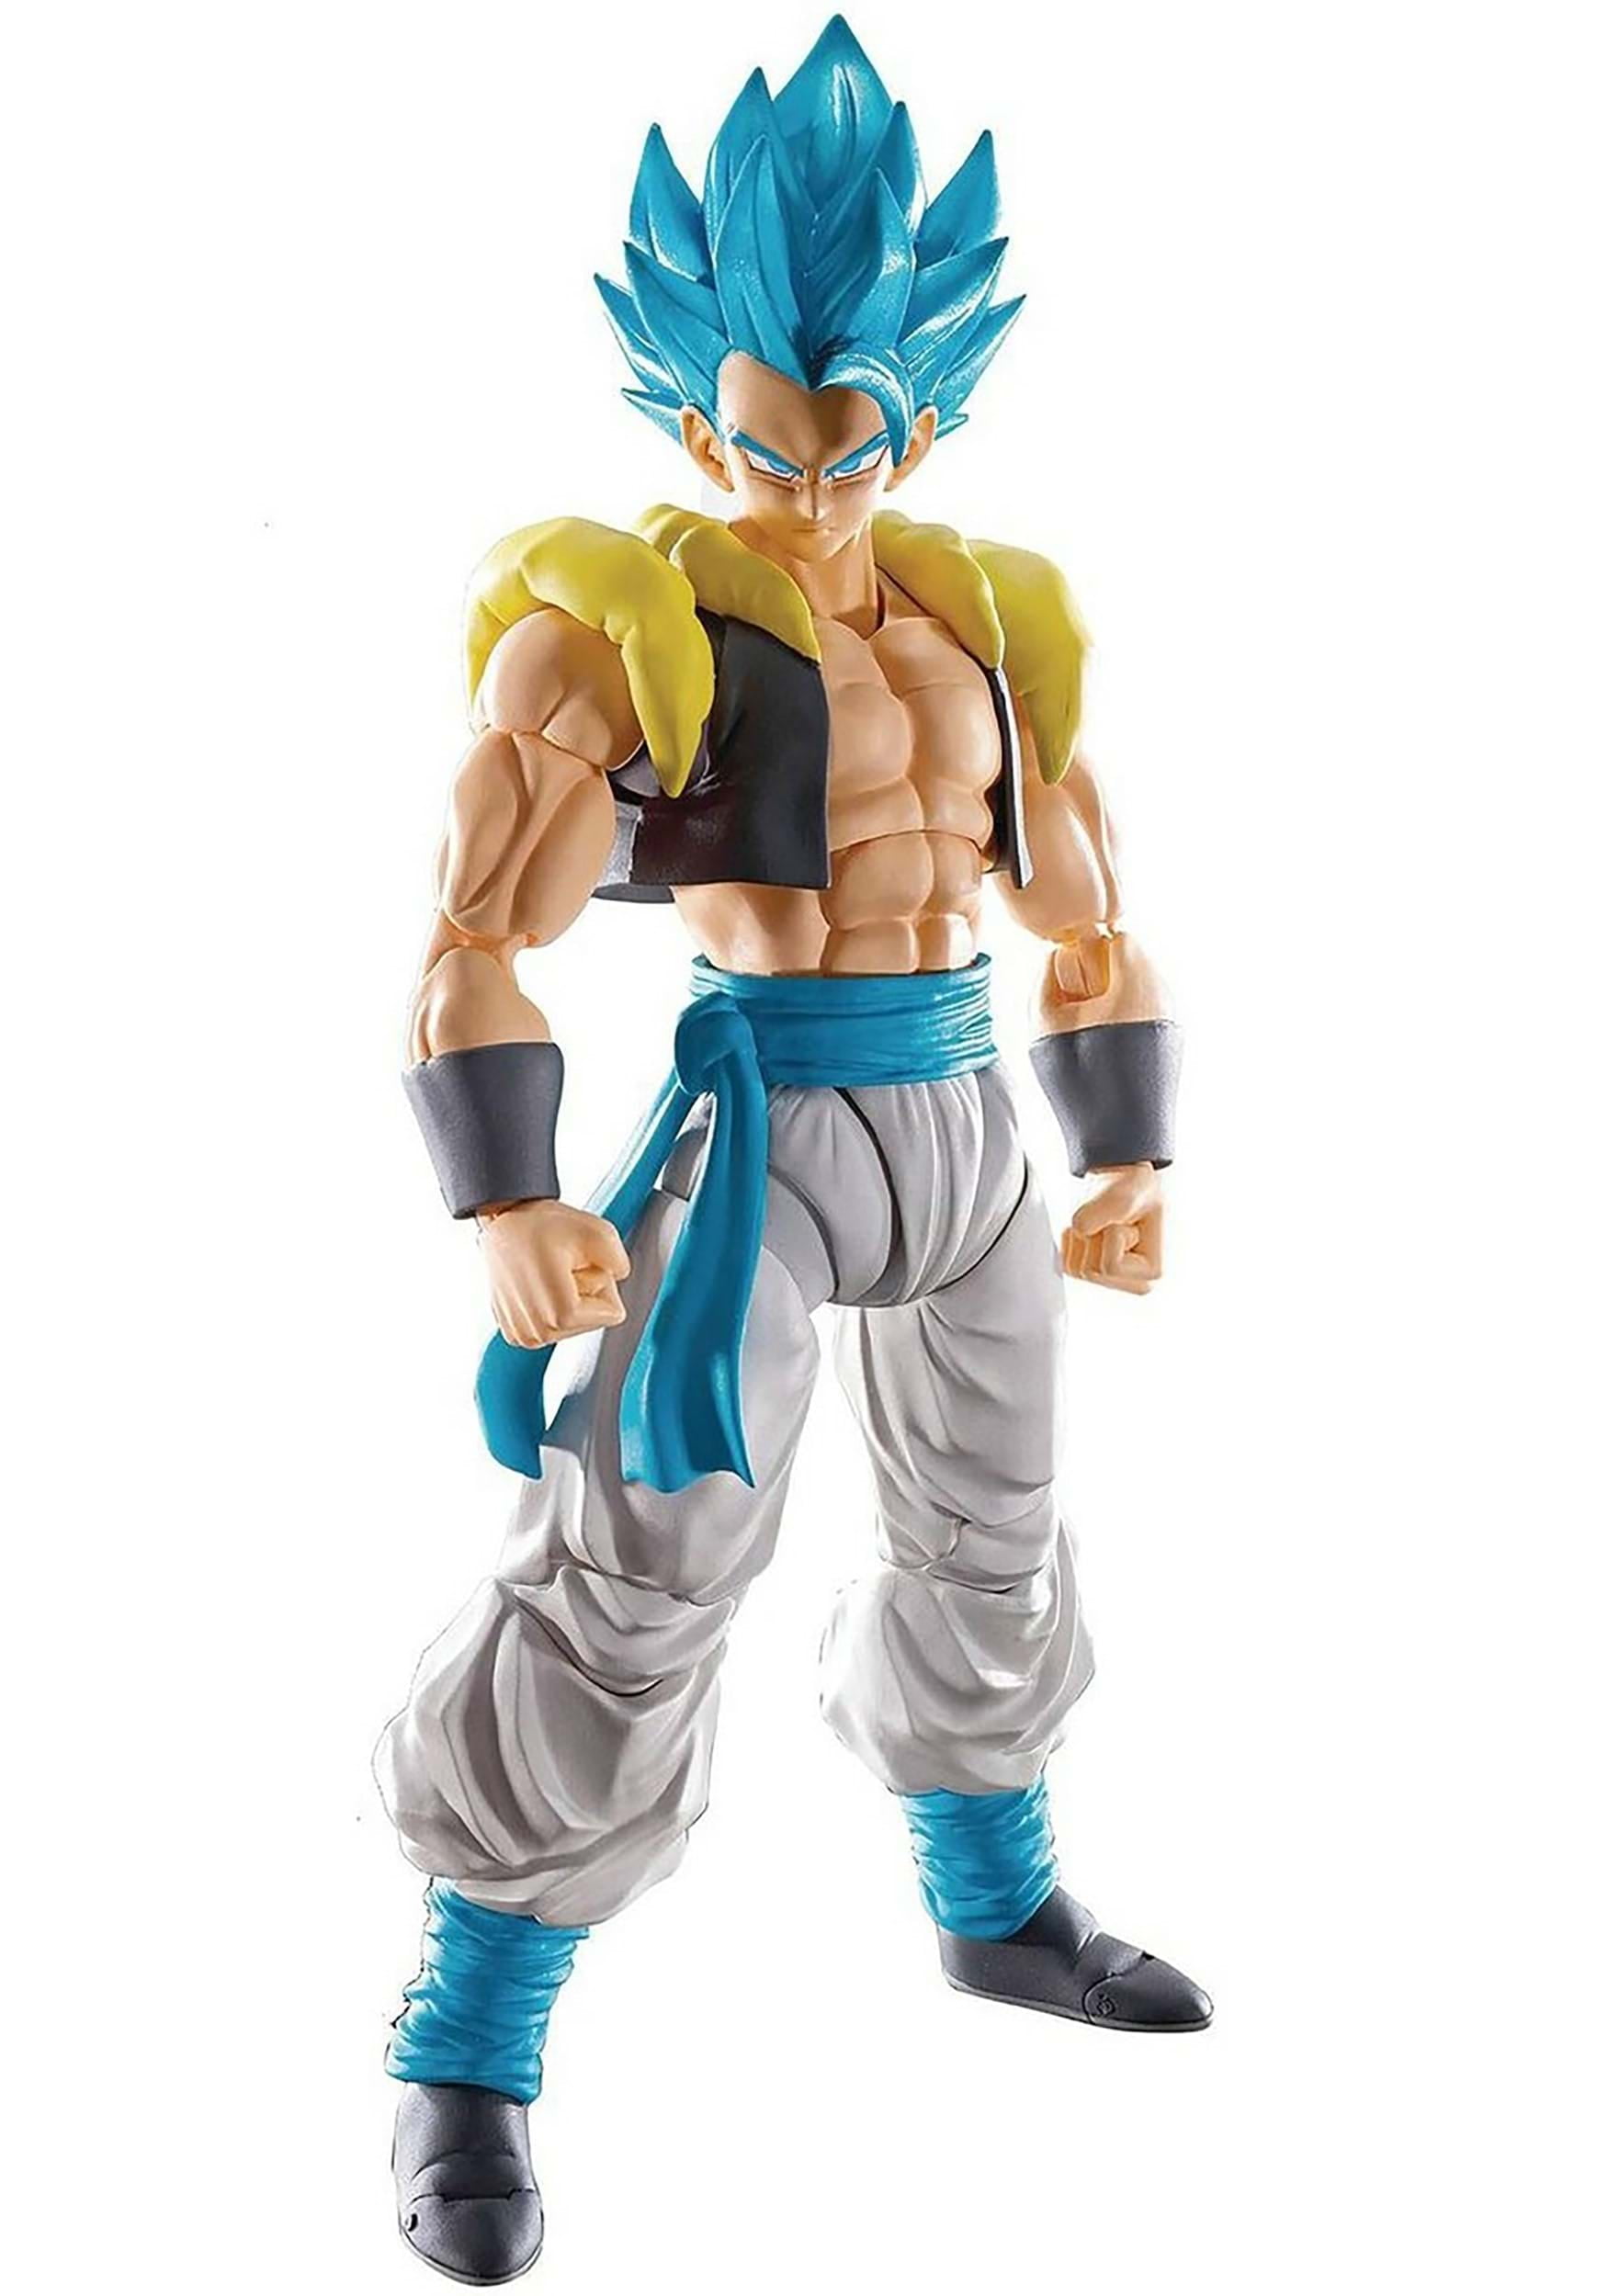 Figuarts Son Goku Autonomous Ultra Instinct Action Figure for sale online Bandai BAS55541 S.H 